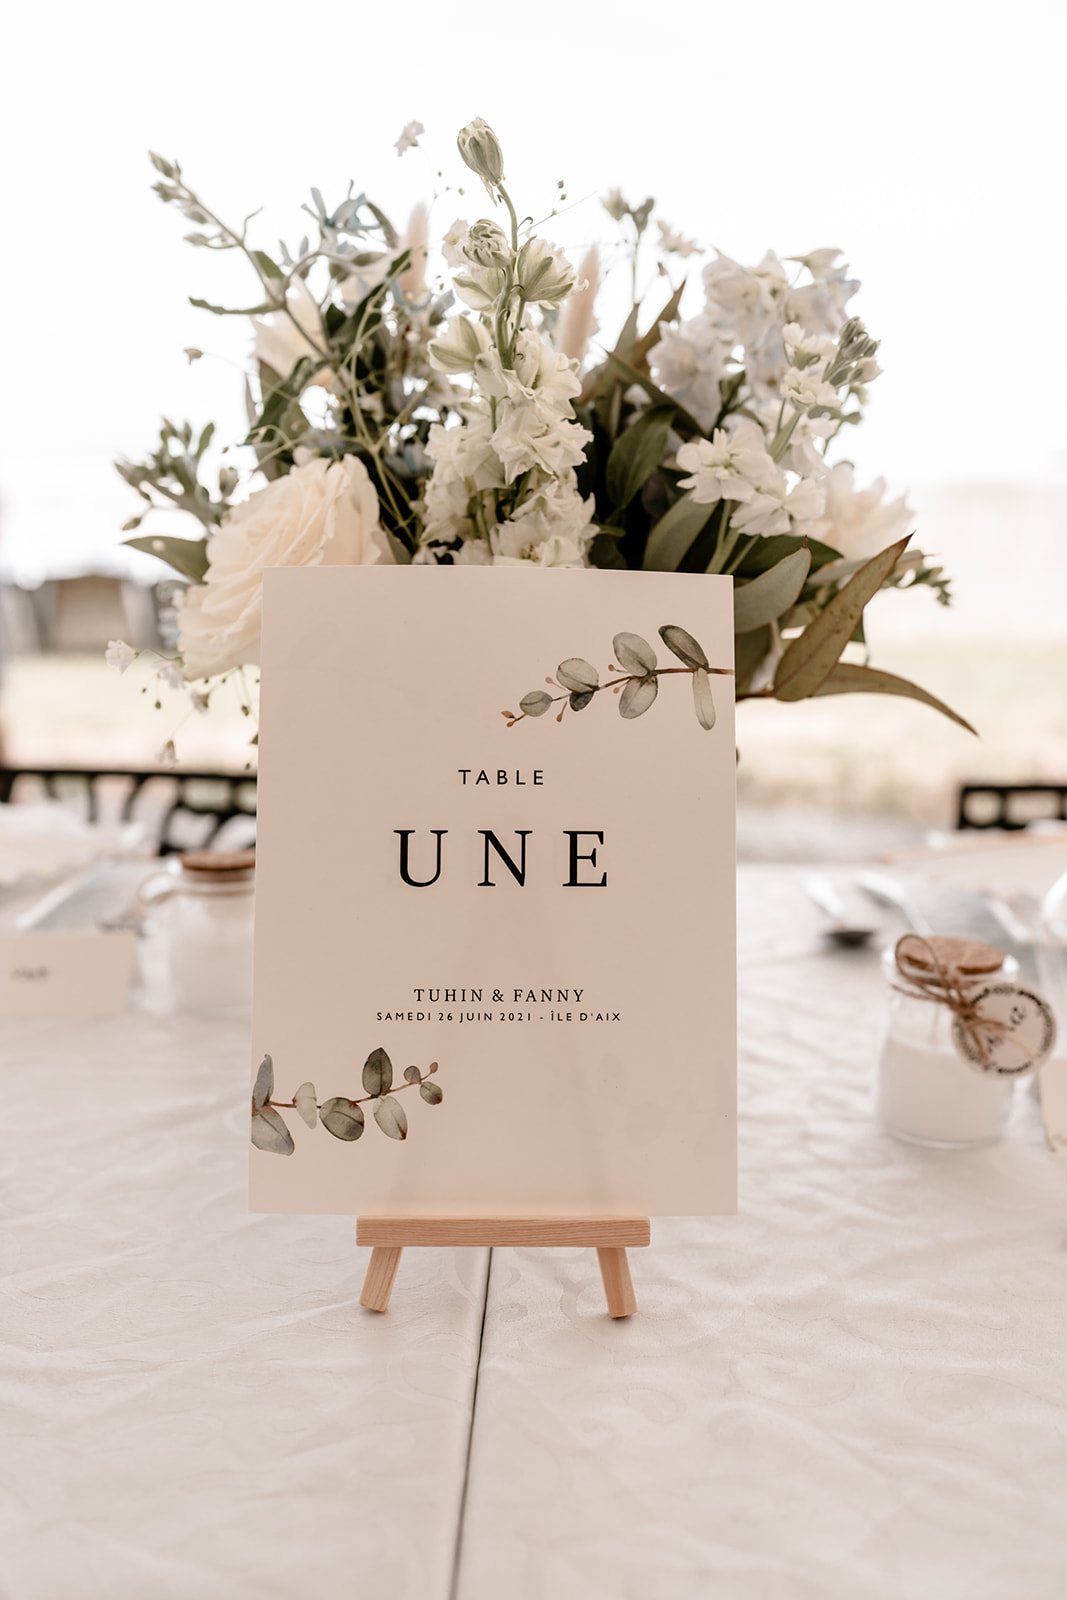 photographe mariage Ile d'aix, décoration de table